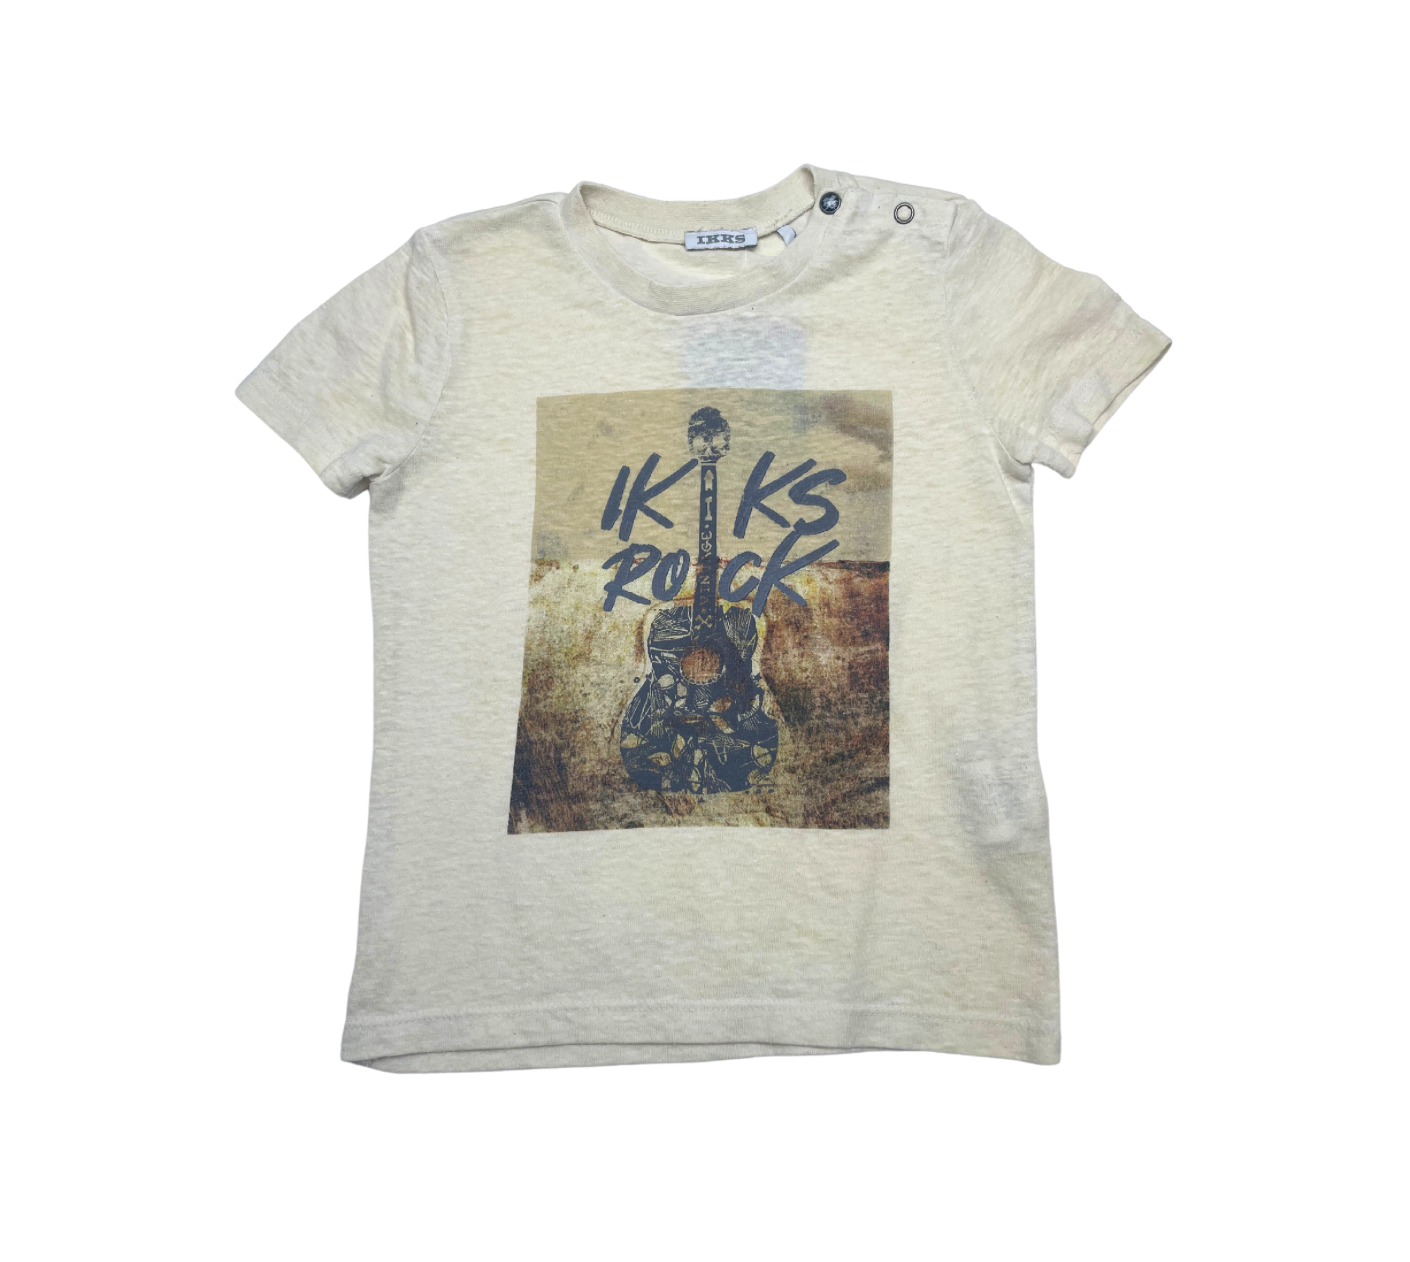 IKKS - T-shirt "ikks rock" - 2 ans